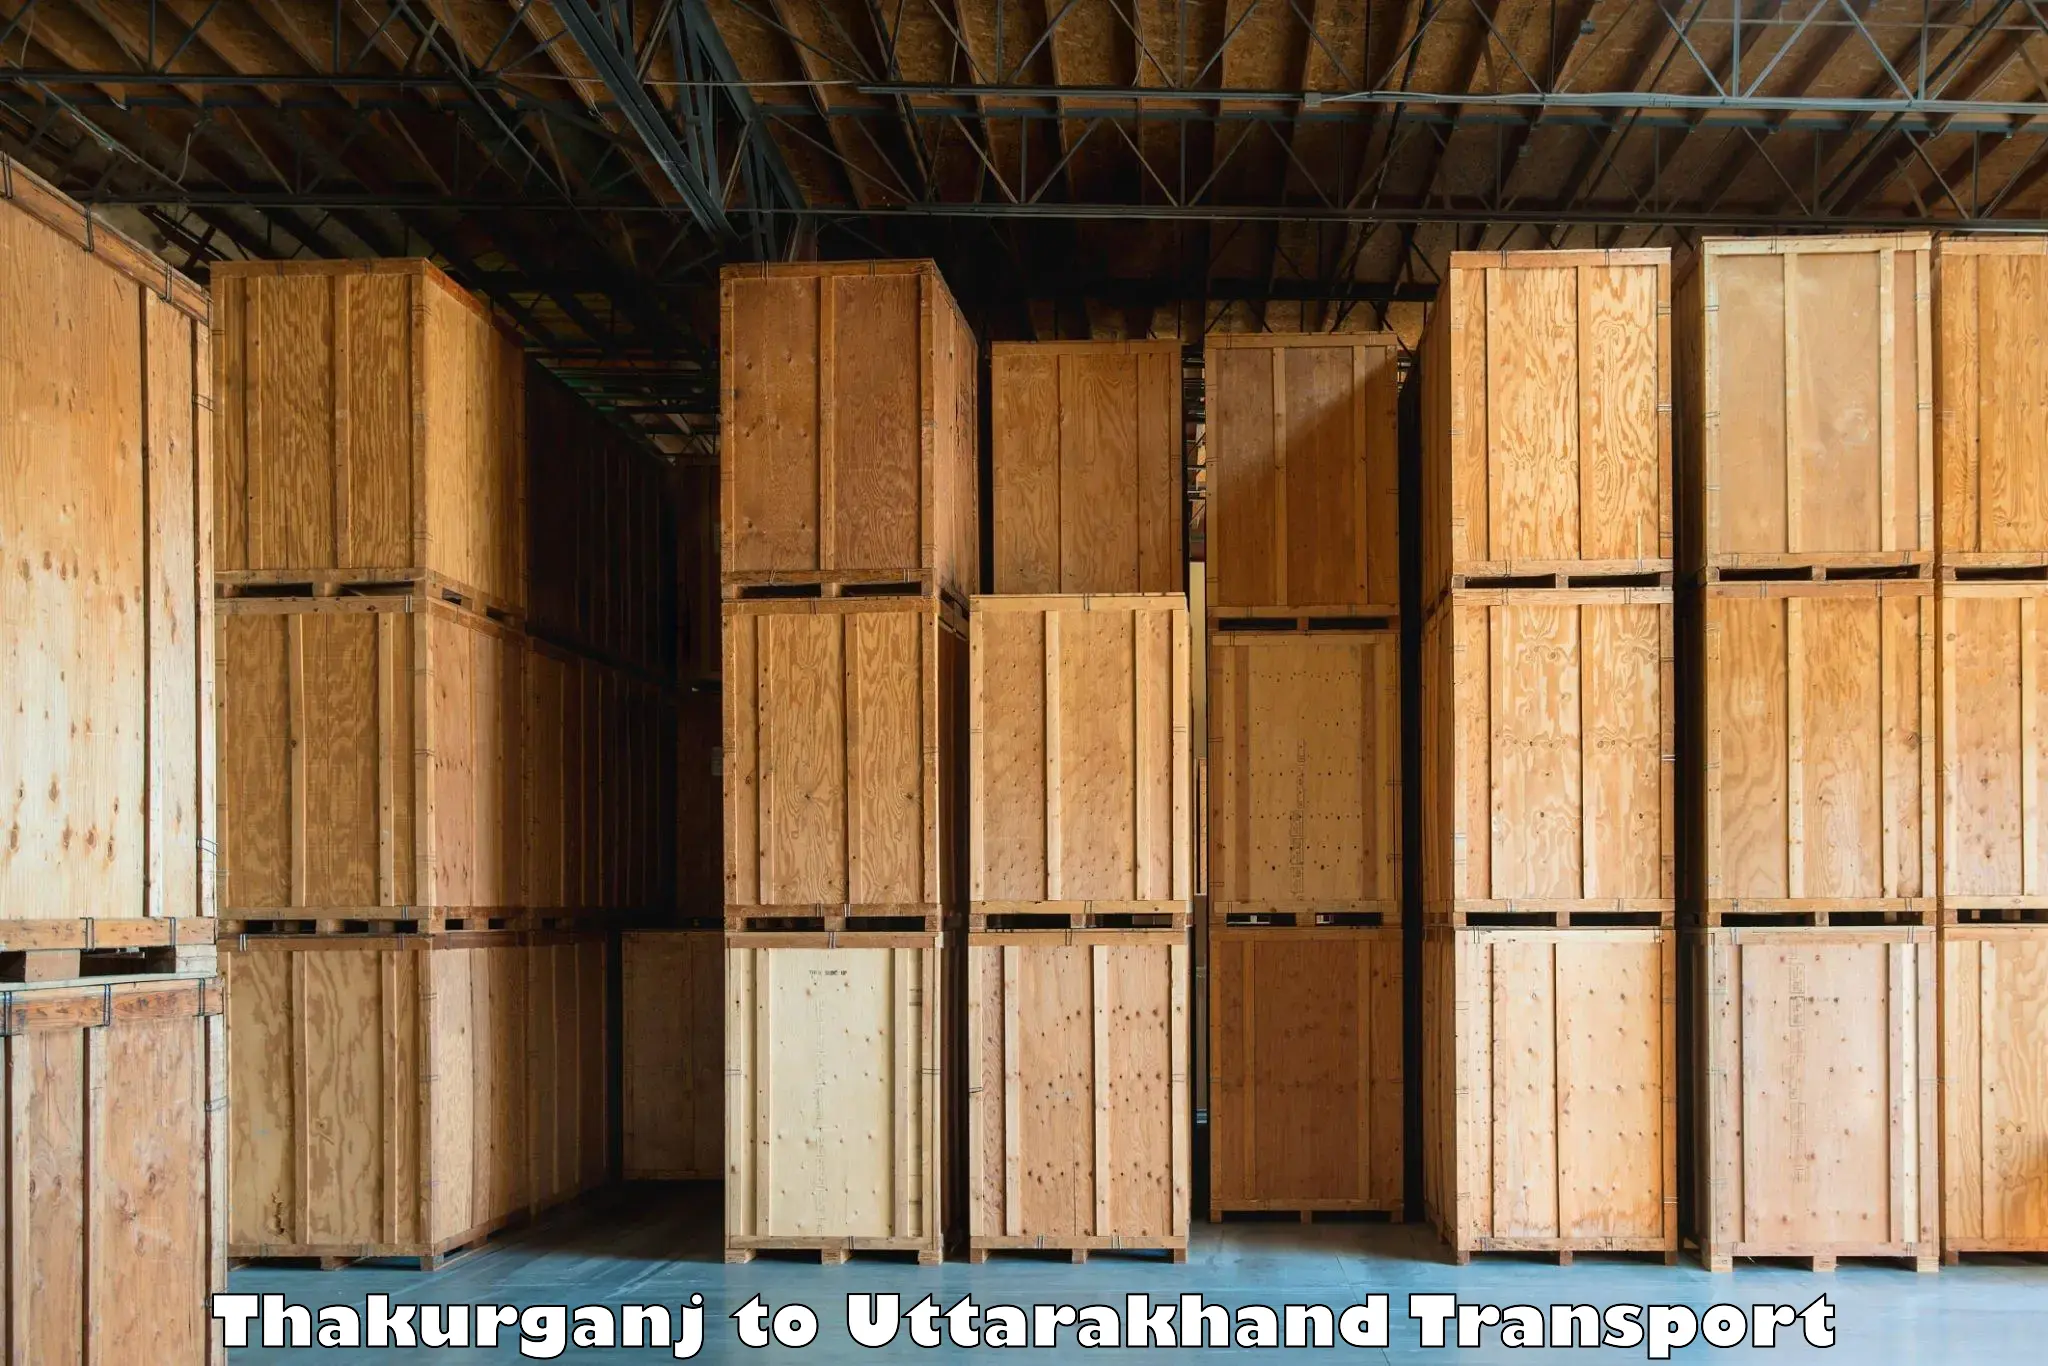 Truck transport companies in India Thakurganj to Pithoragarh